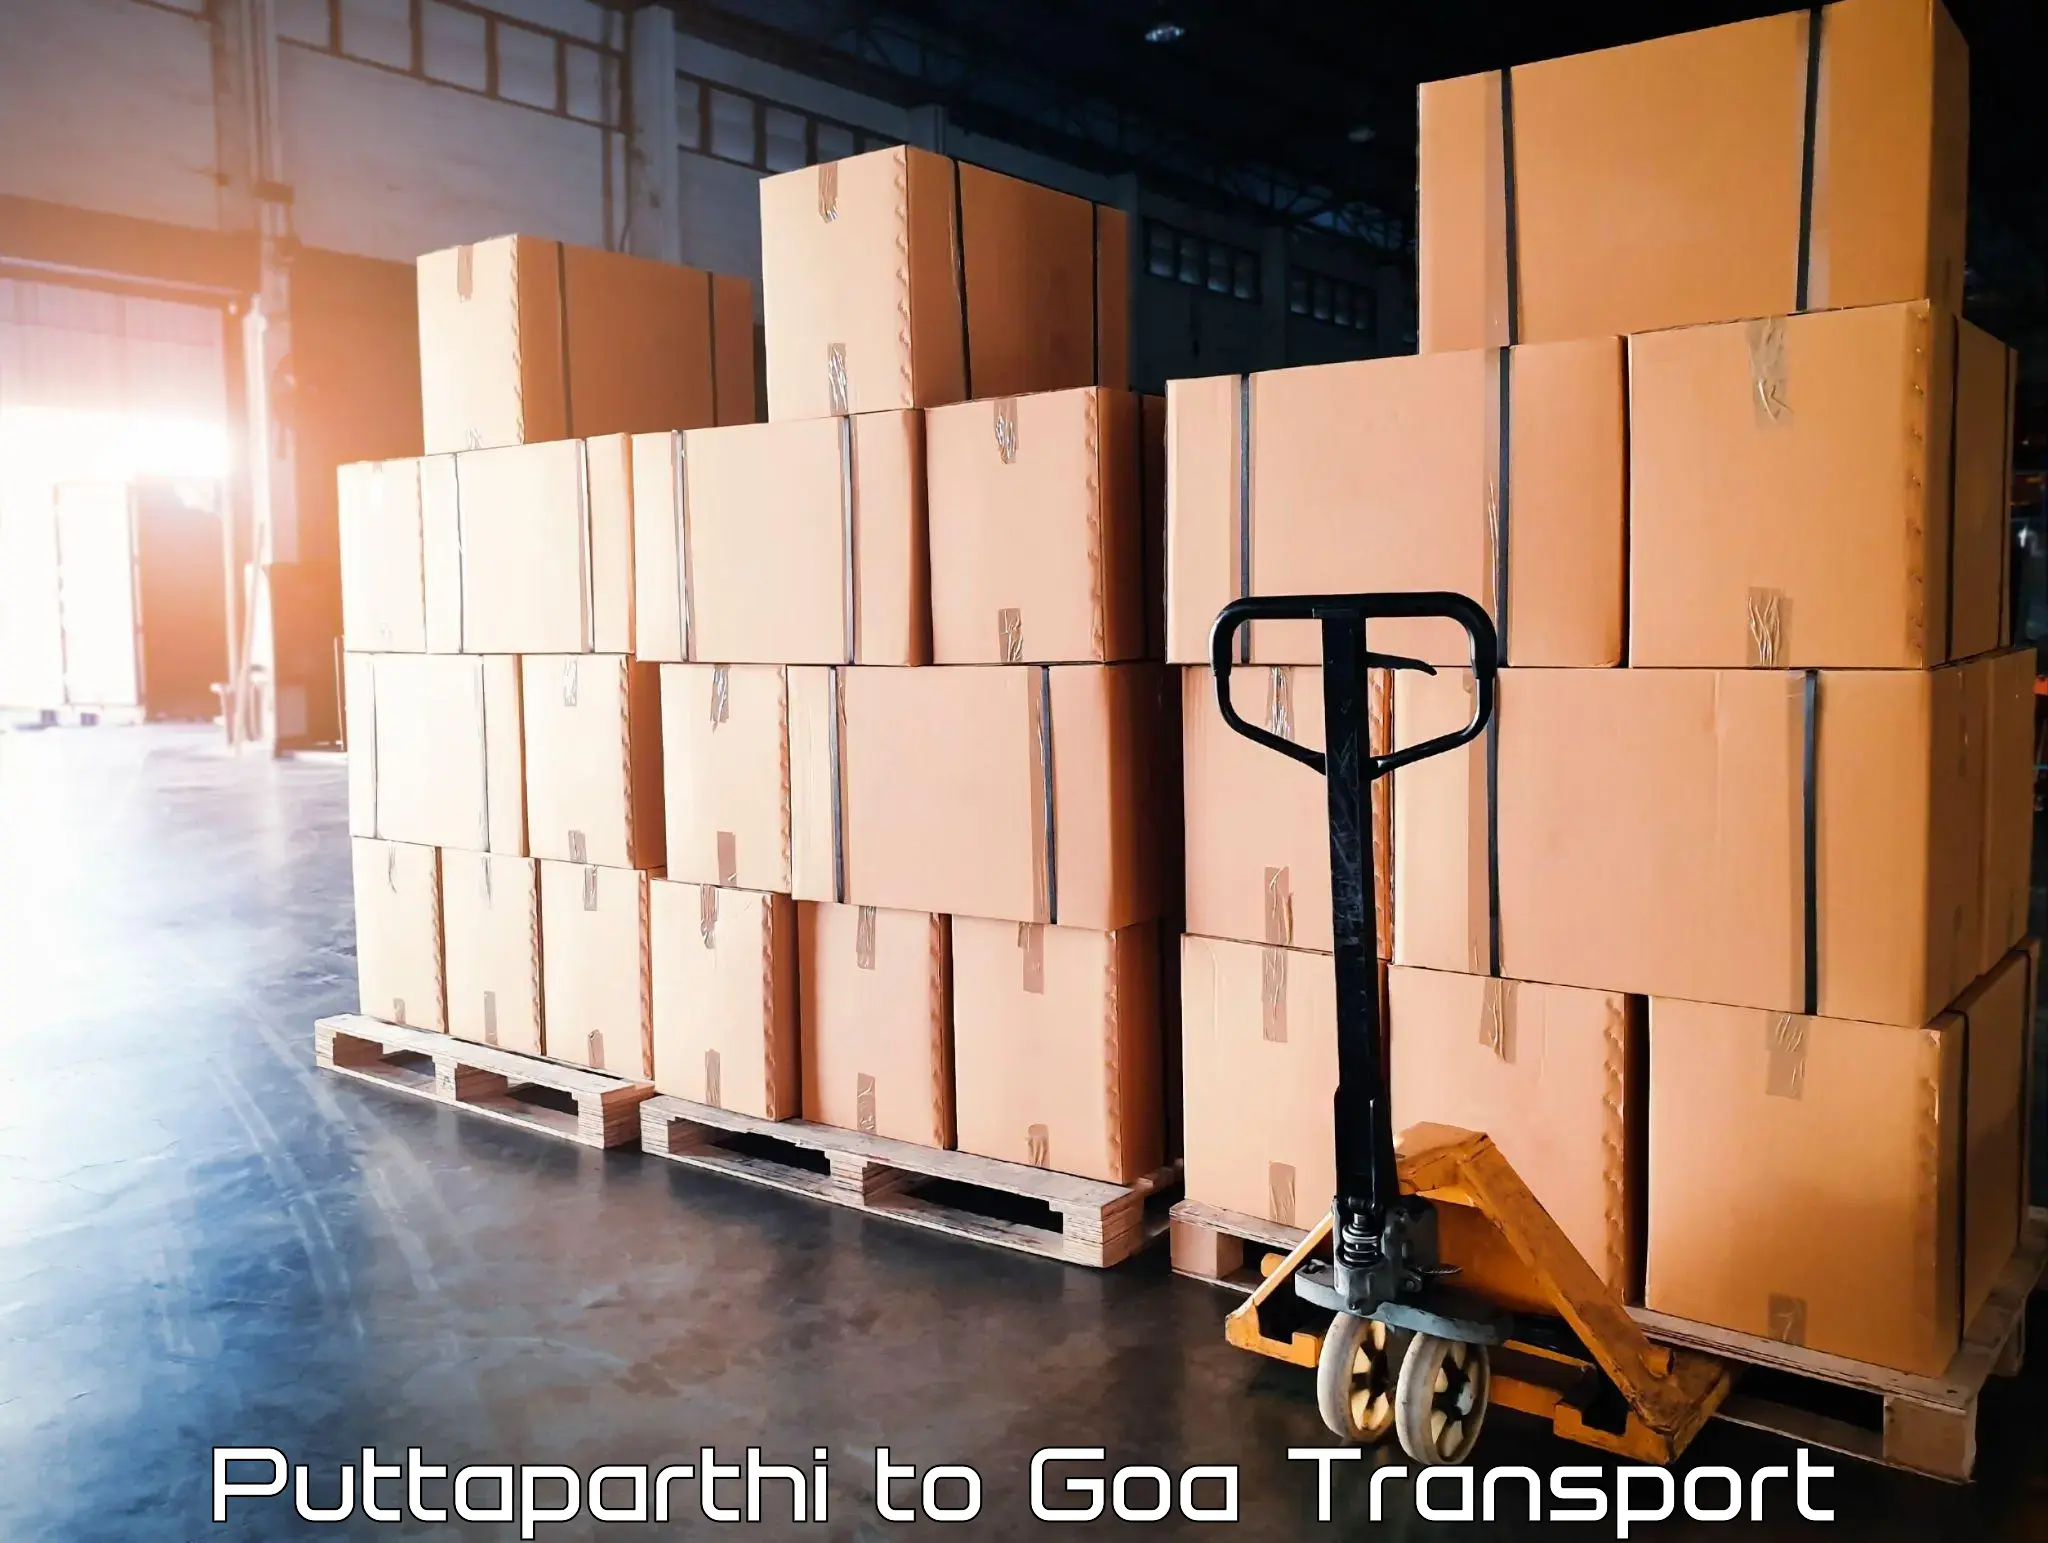 Online transport booking Puttaparthi to Panjim